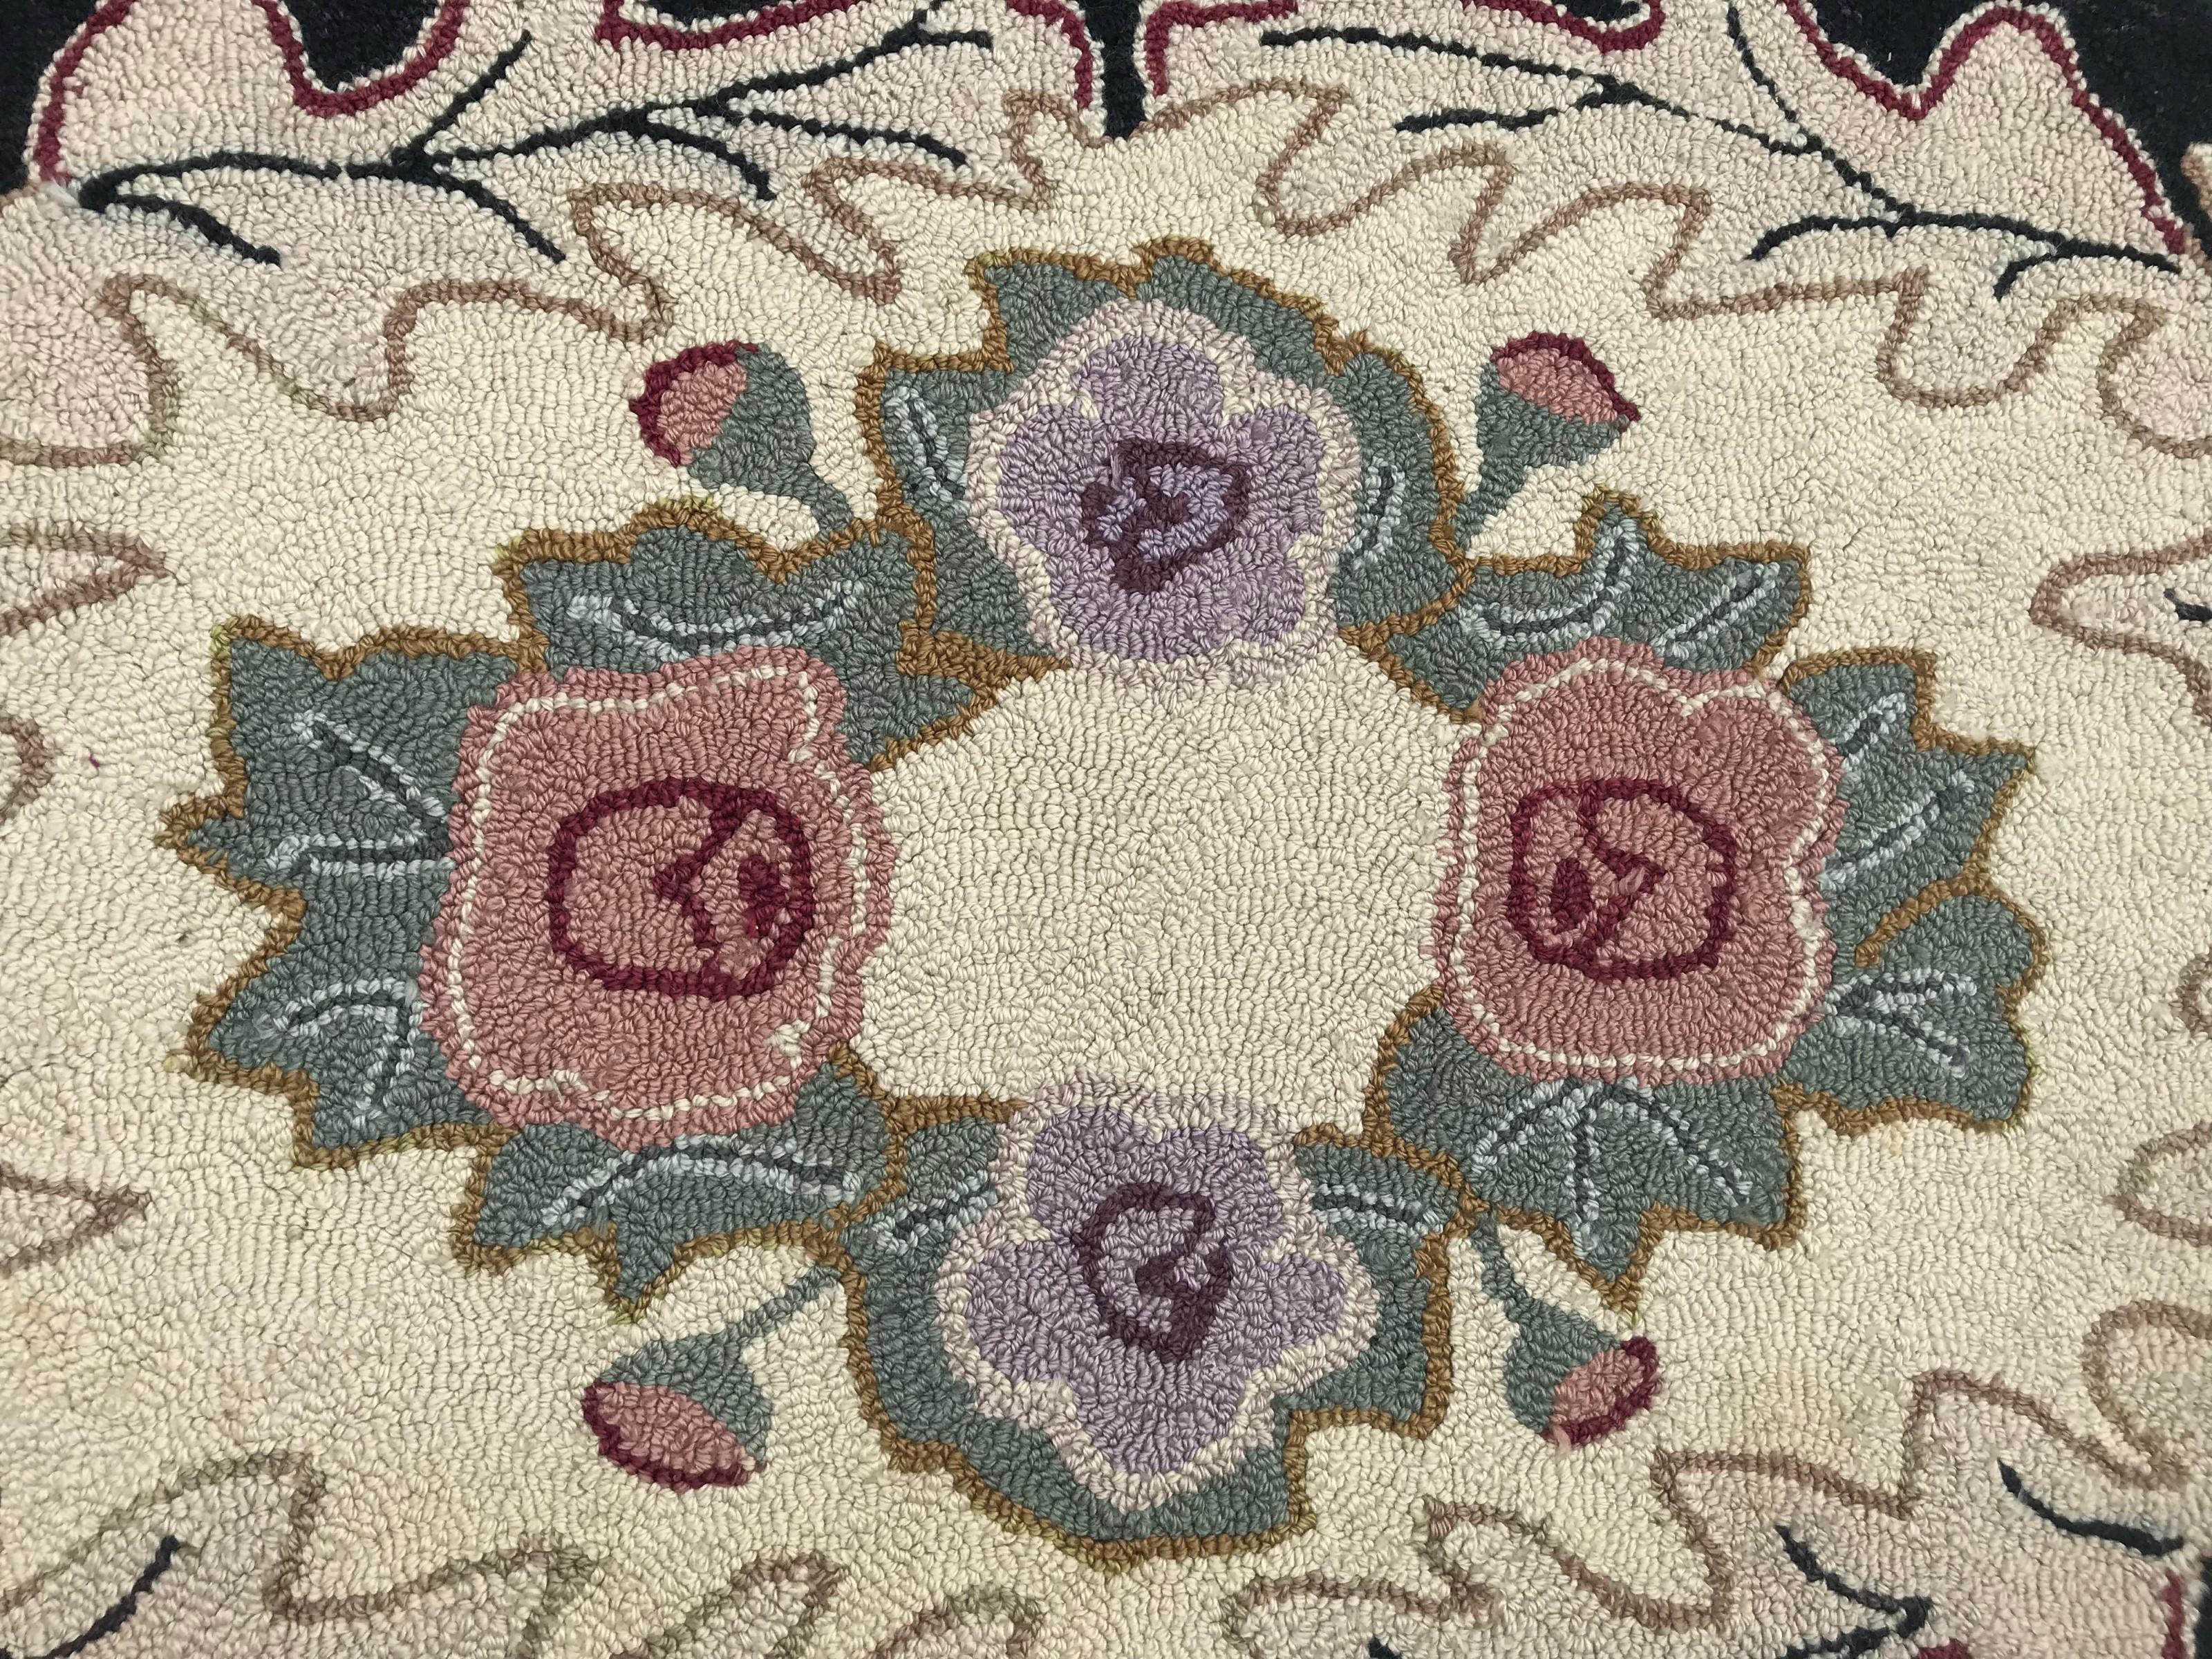 Schöner amerikanischer Hook-Teppich mit dekorativem Blumenmuster, ganz in amerikanischer Handarbeit aus Wollsamt auf Baumwollgrund.

✨✨✨
